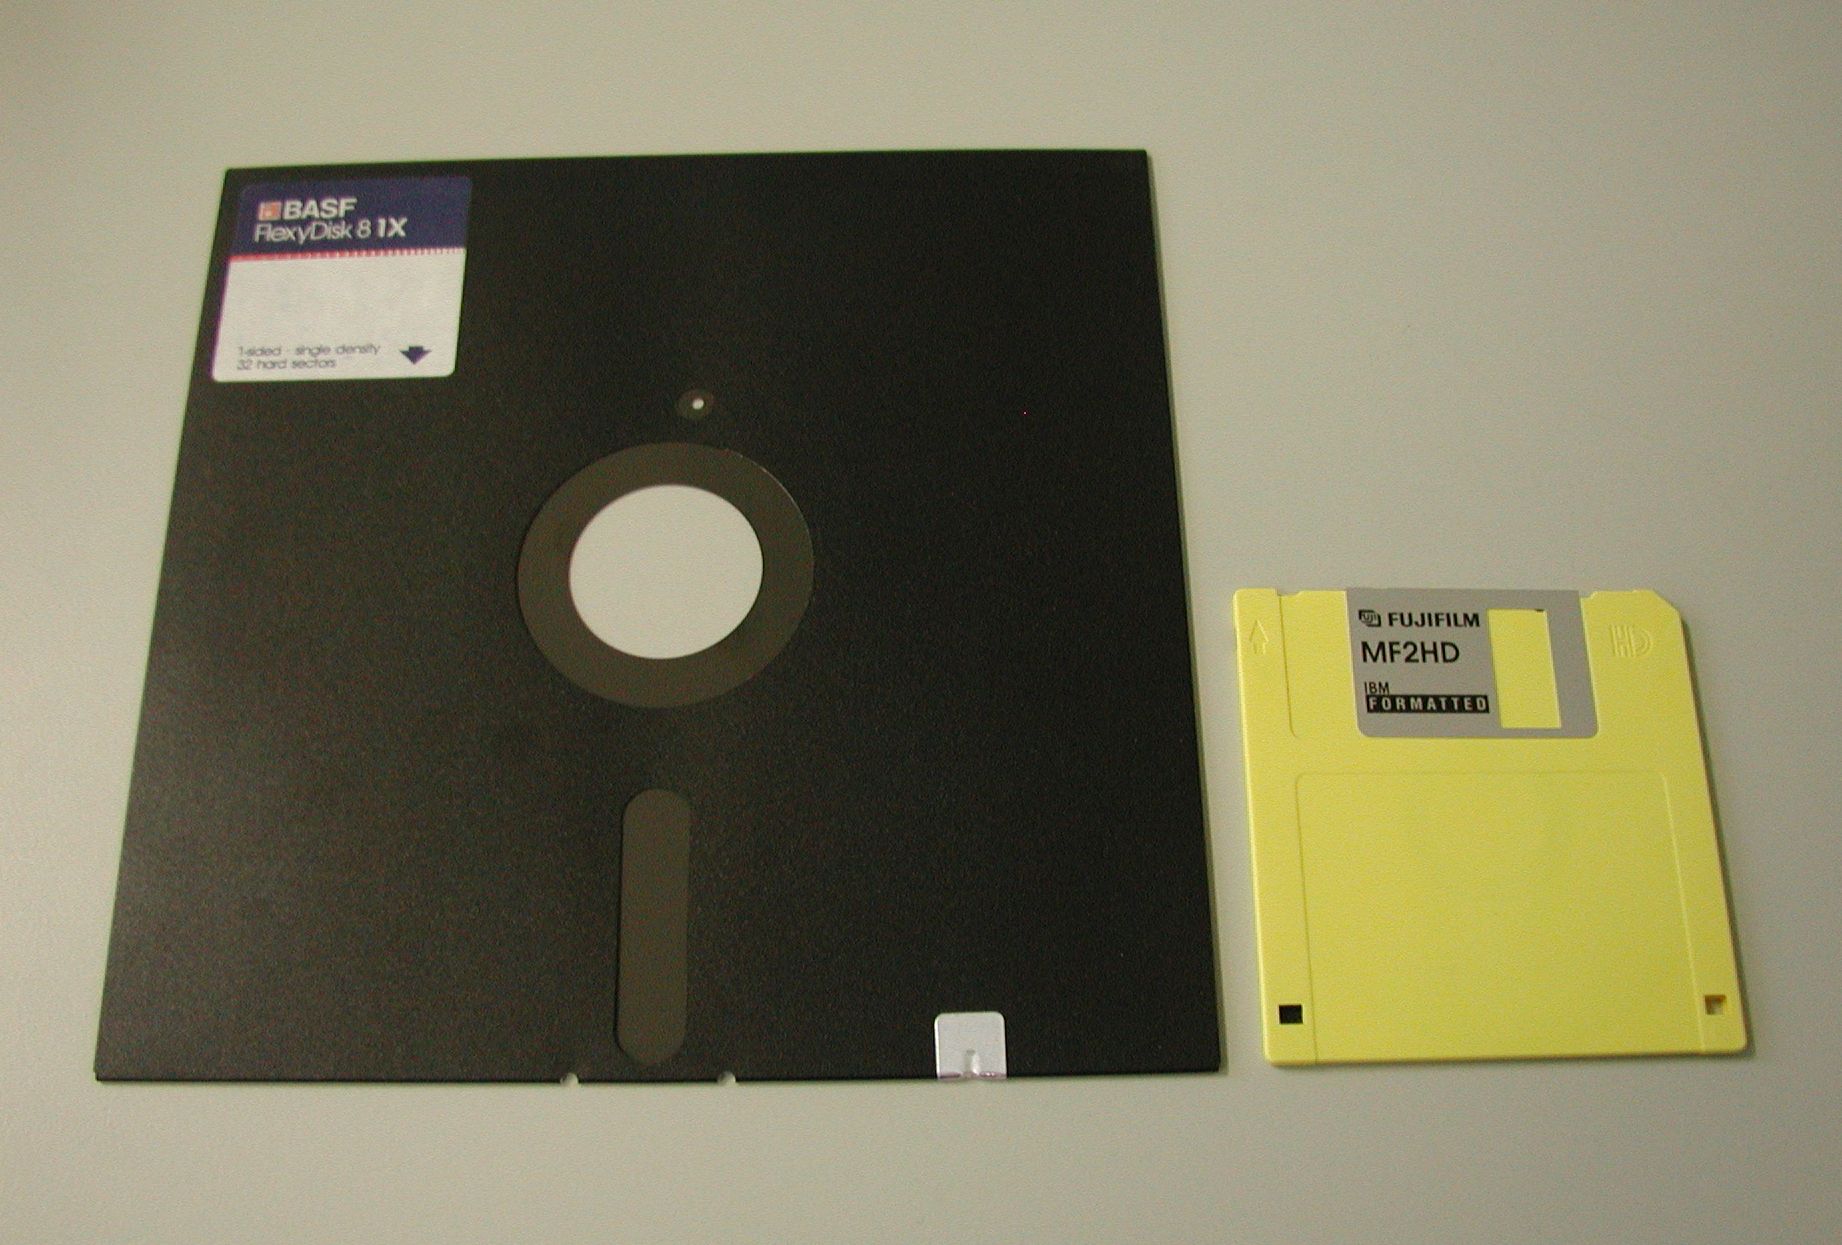 8" vs. 3.5" floppies